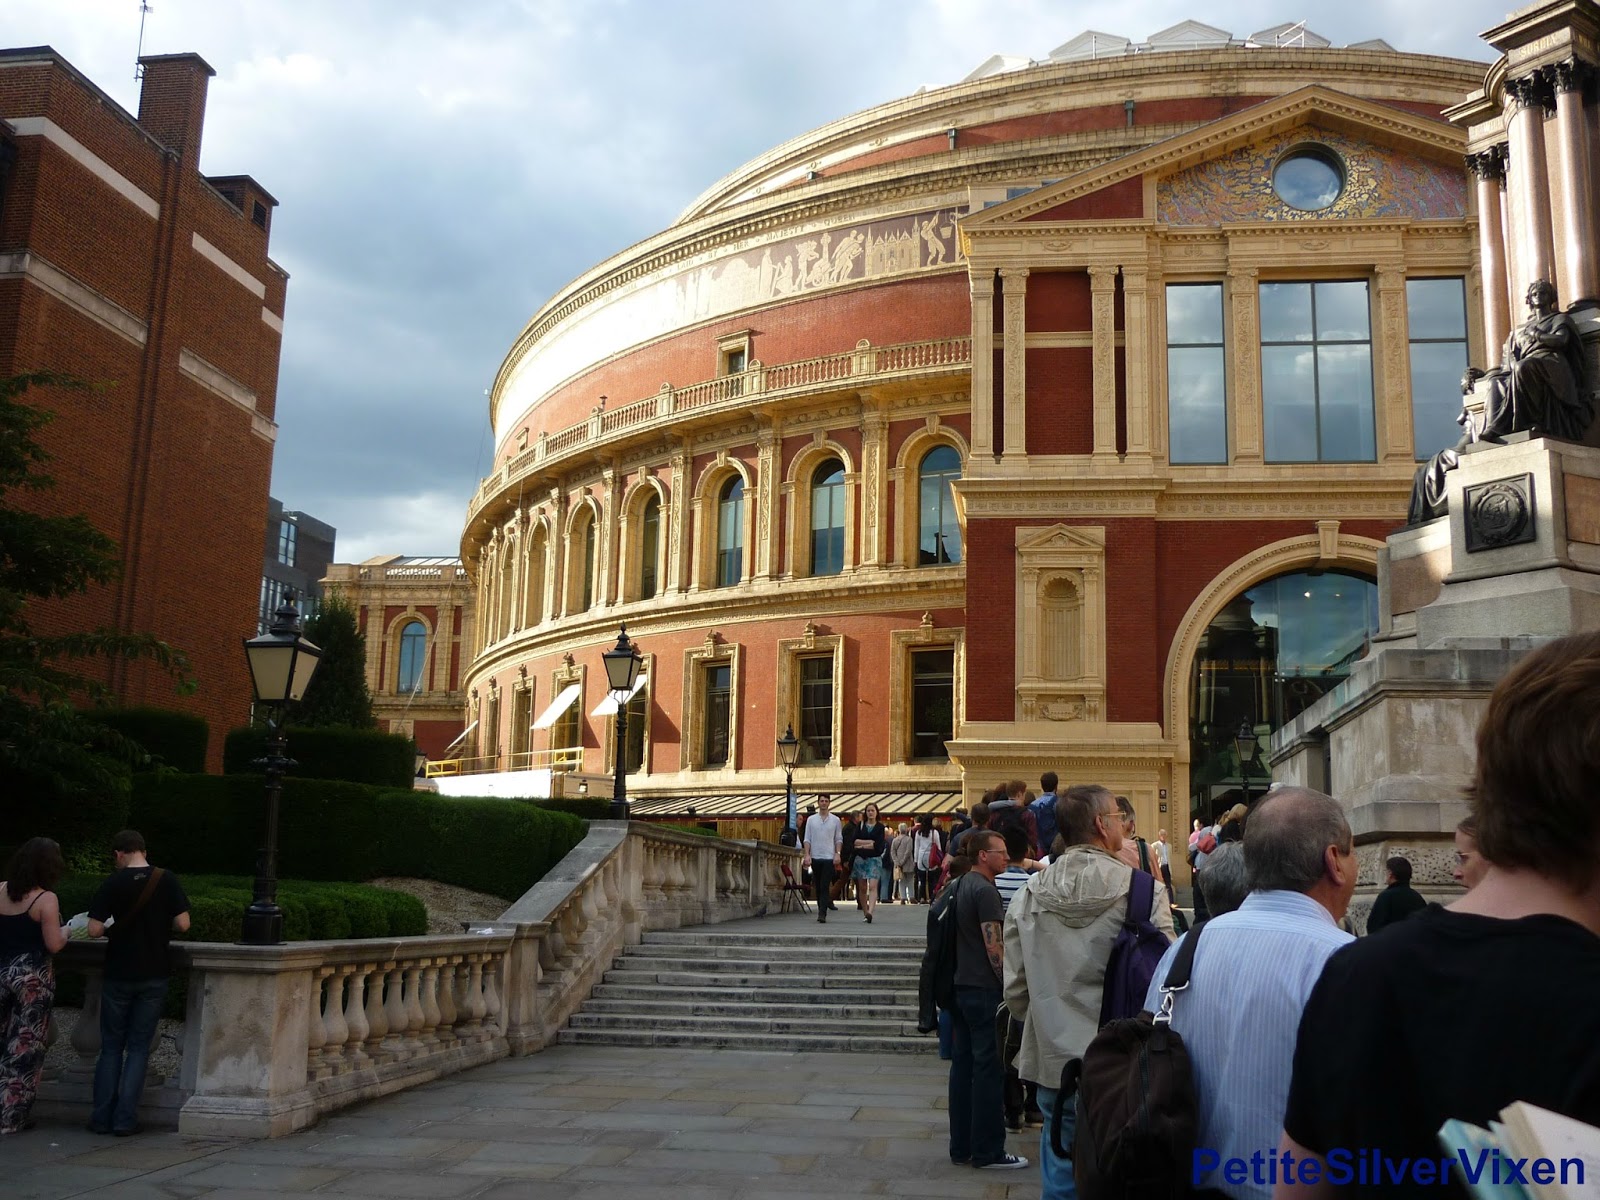 Royal Albert Hall | PetiteSilverVixen